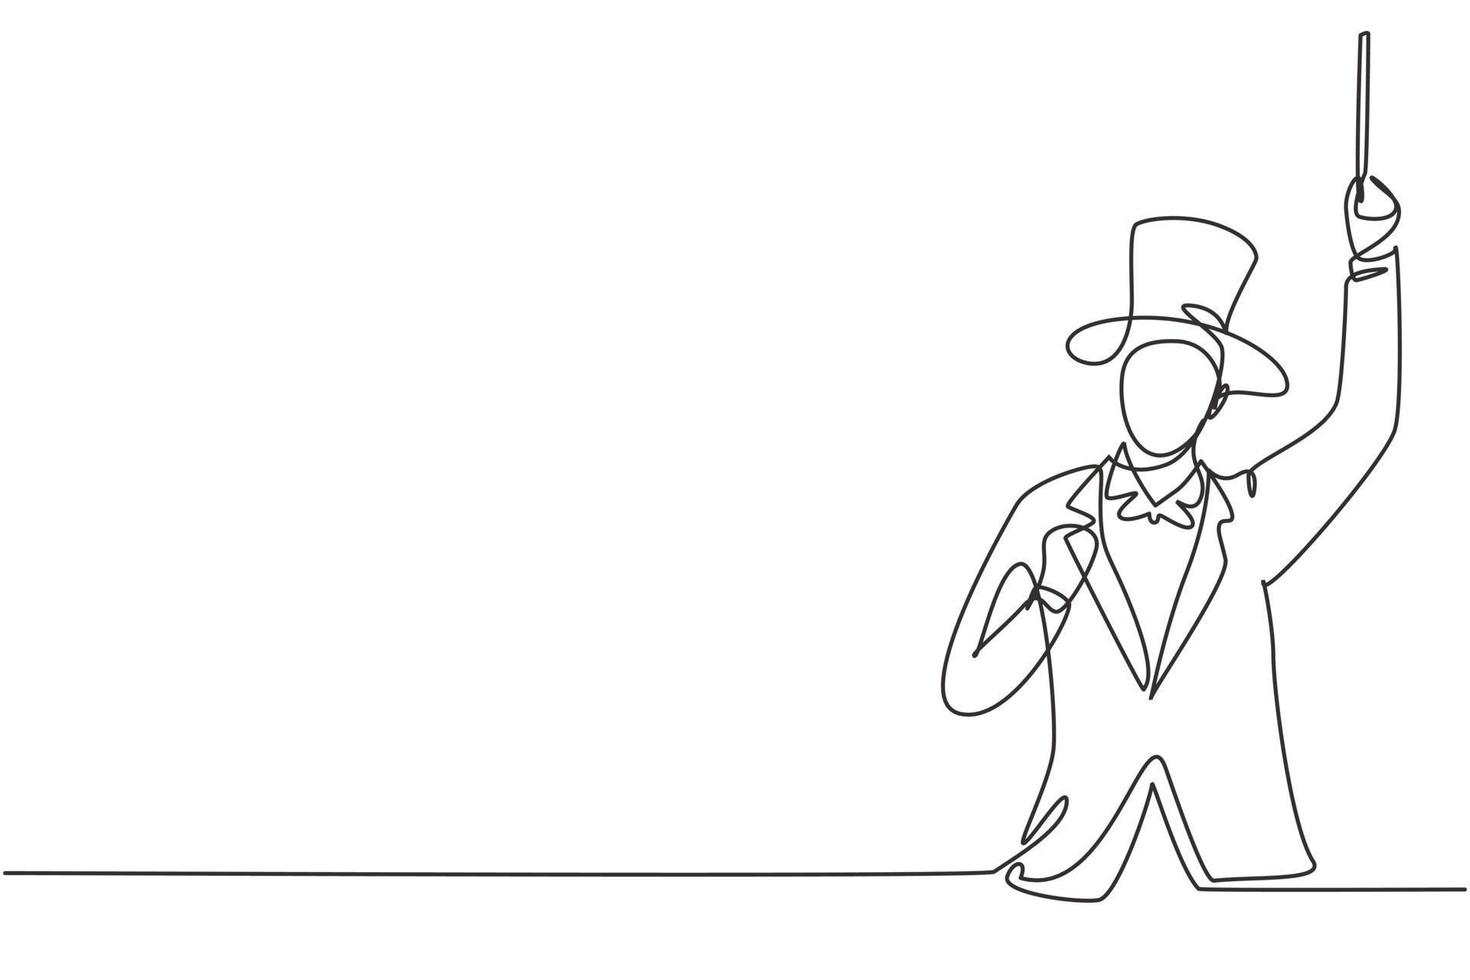 mago de dibujo de línea continua única con gesto de celebración con sombrero y sosteniendo una varita mágica listo para entretener a la audiencia en el programa de televisión. Ilustración de vector de diseño gráfico de dibujo de una línea